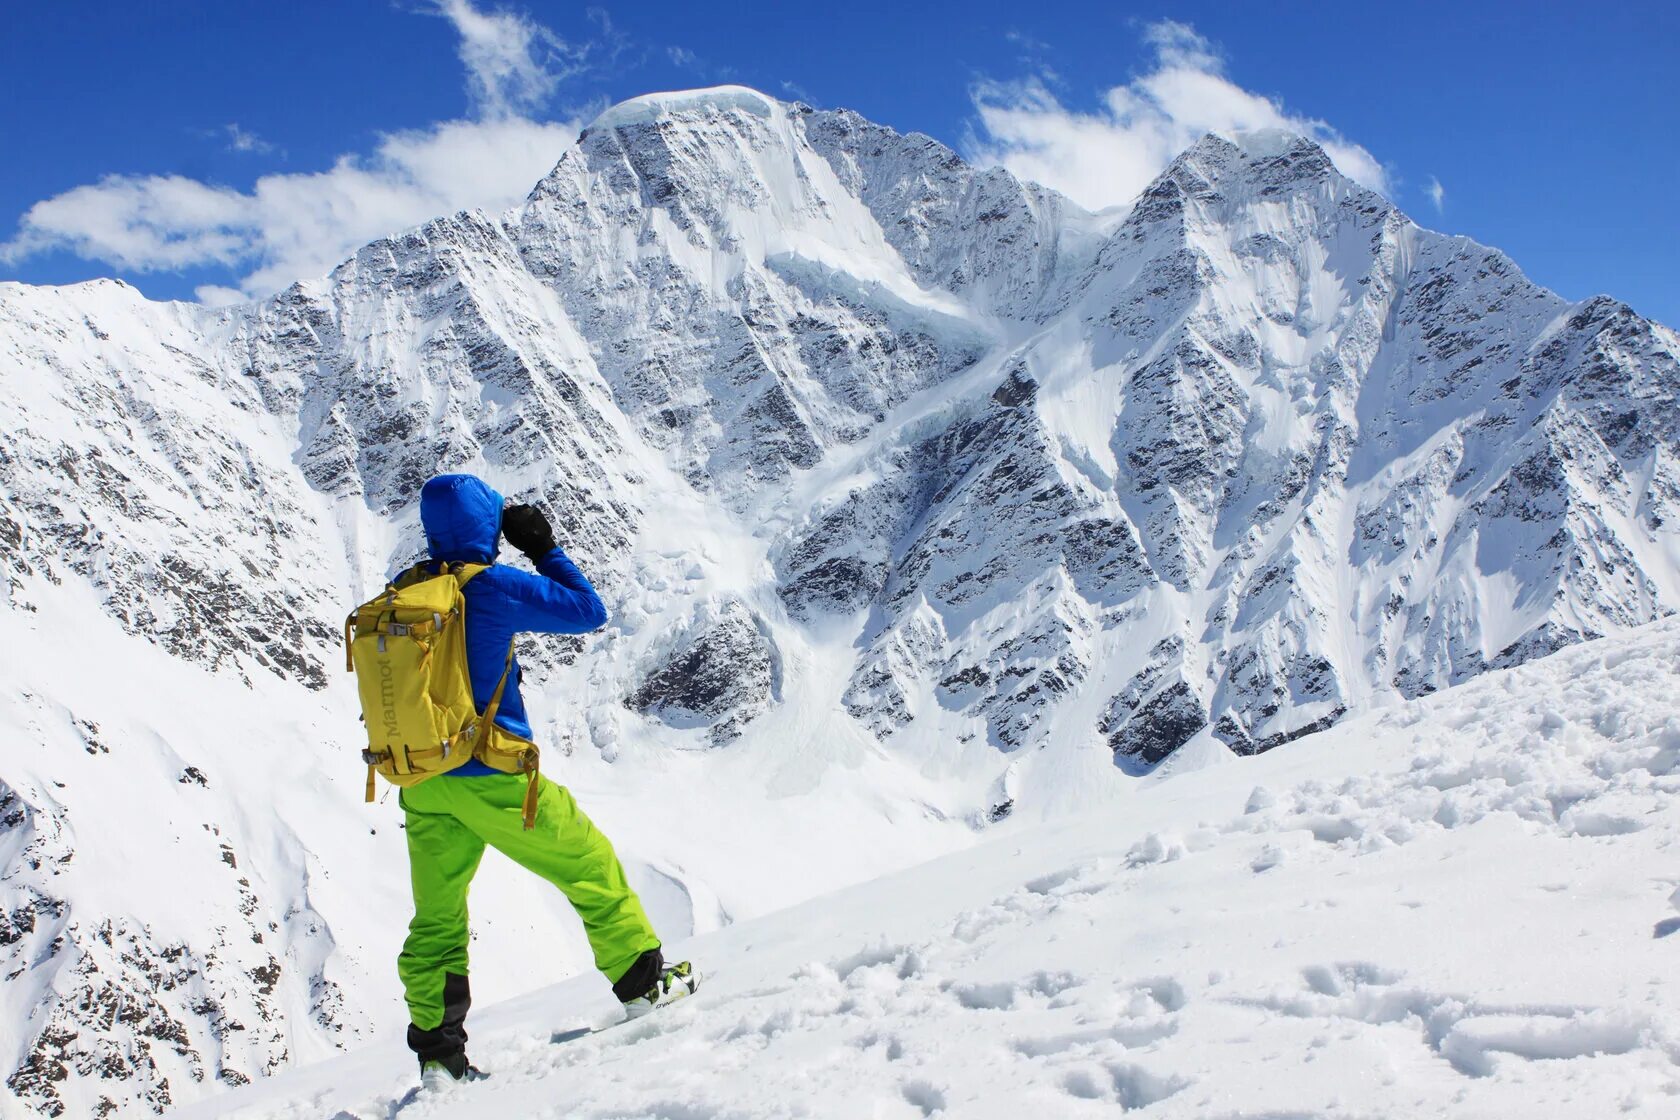 Эльбрус альп. Эльбрус горнолыжка. Приэльбрусье горнолыжный курорт. Терскол горнолыжный курорт. Эльбрус-Азау, Кабардино-Балкария.